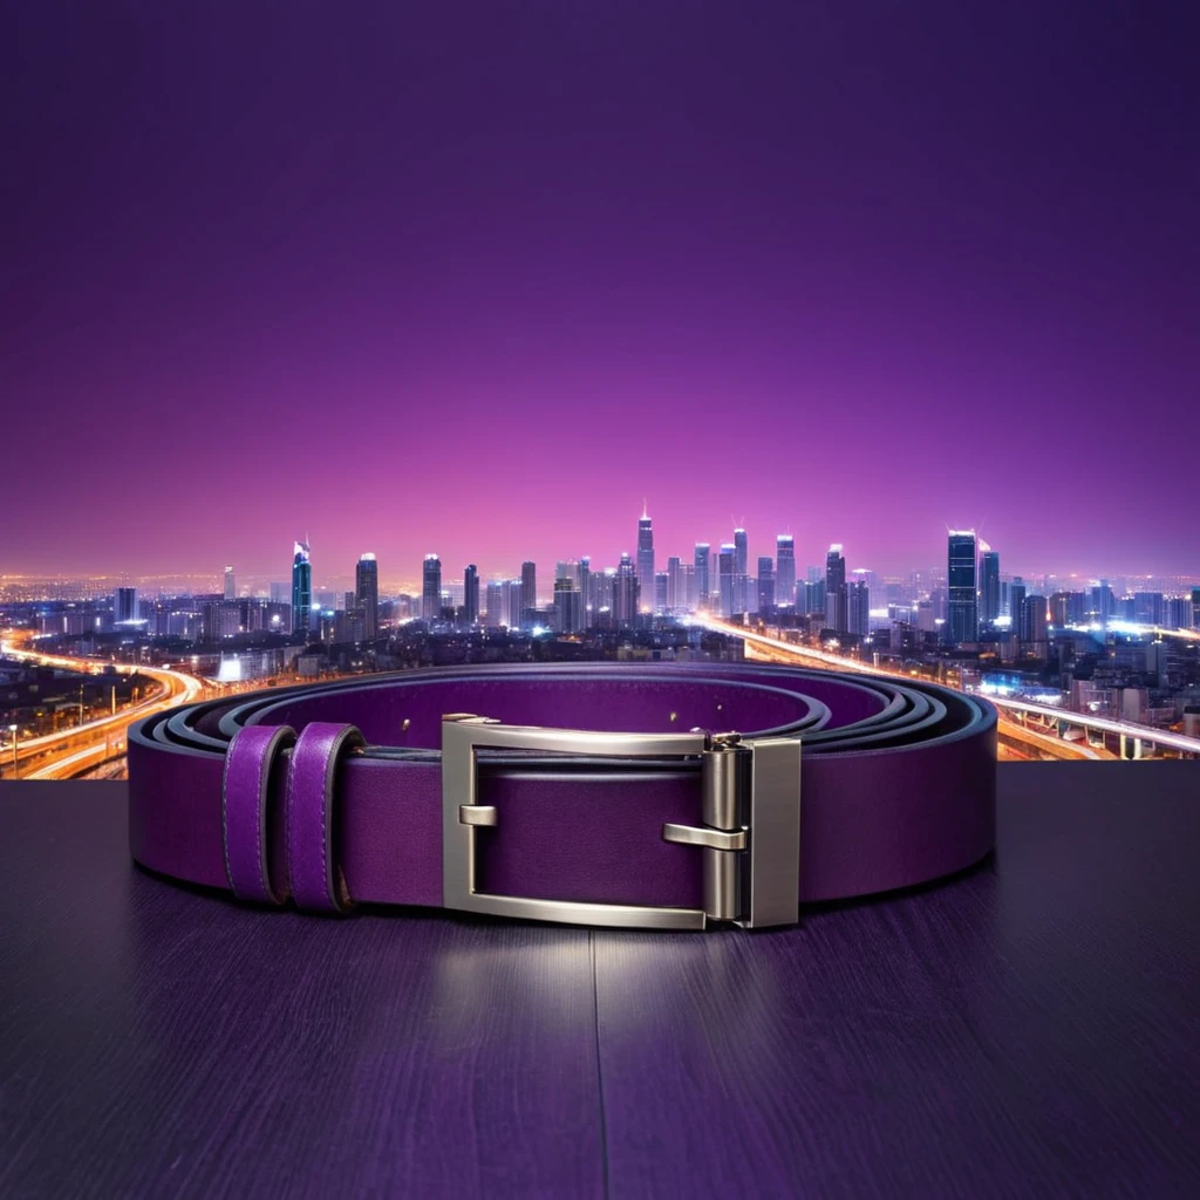 (belt showcase) <lora:40_belt_showcase:1.1>
Purple background,
high quality, professional, highres, amazing, dramatic,
(Ro...